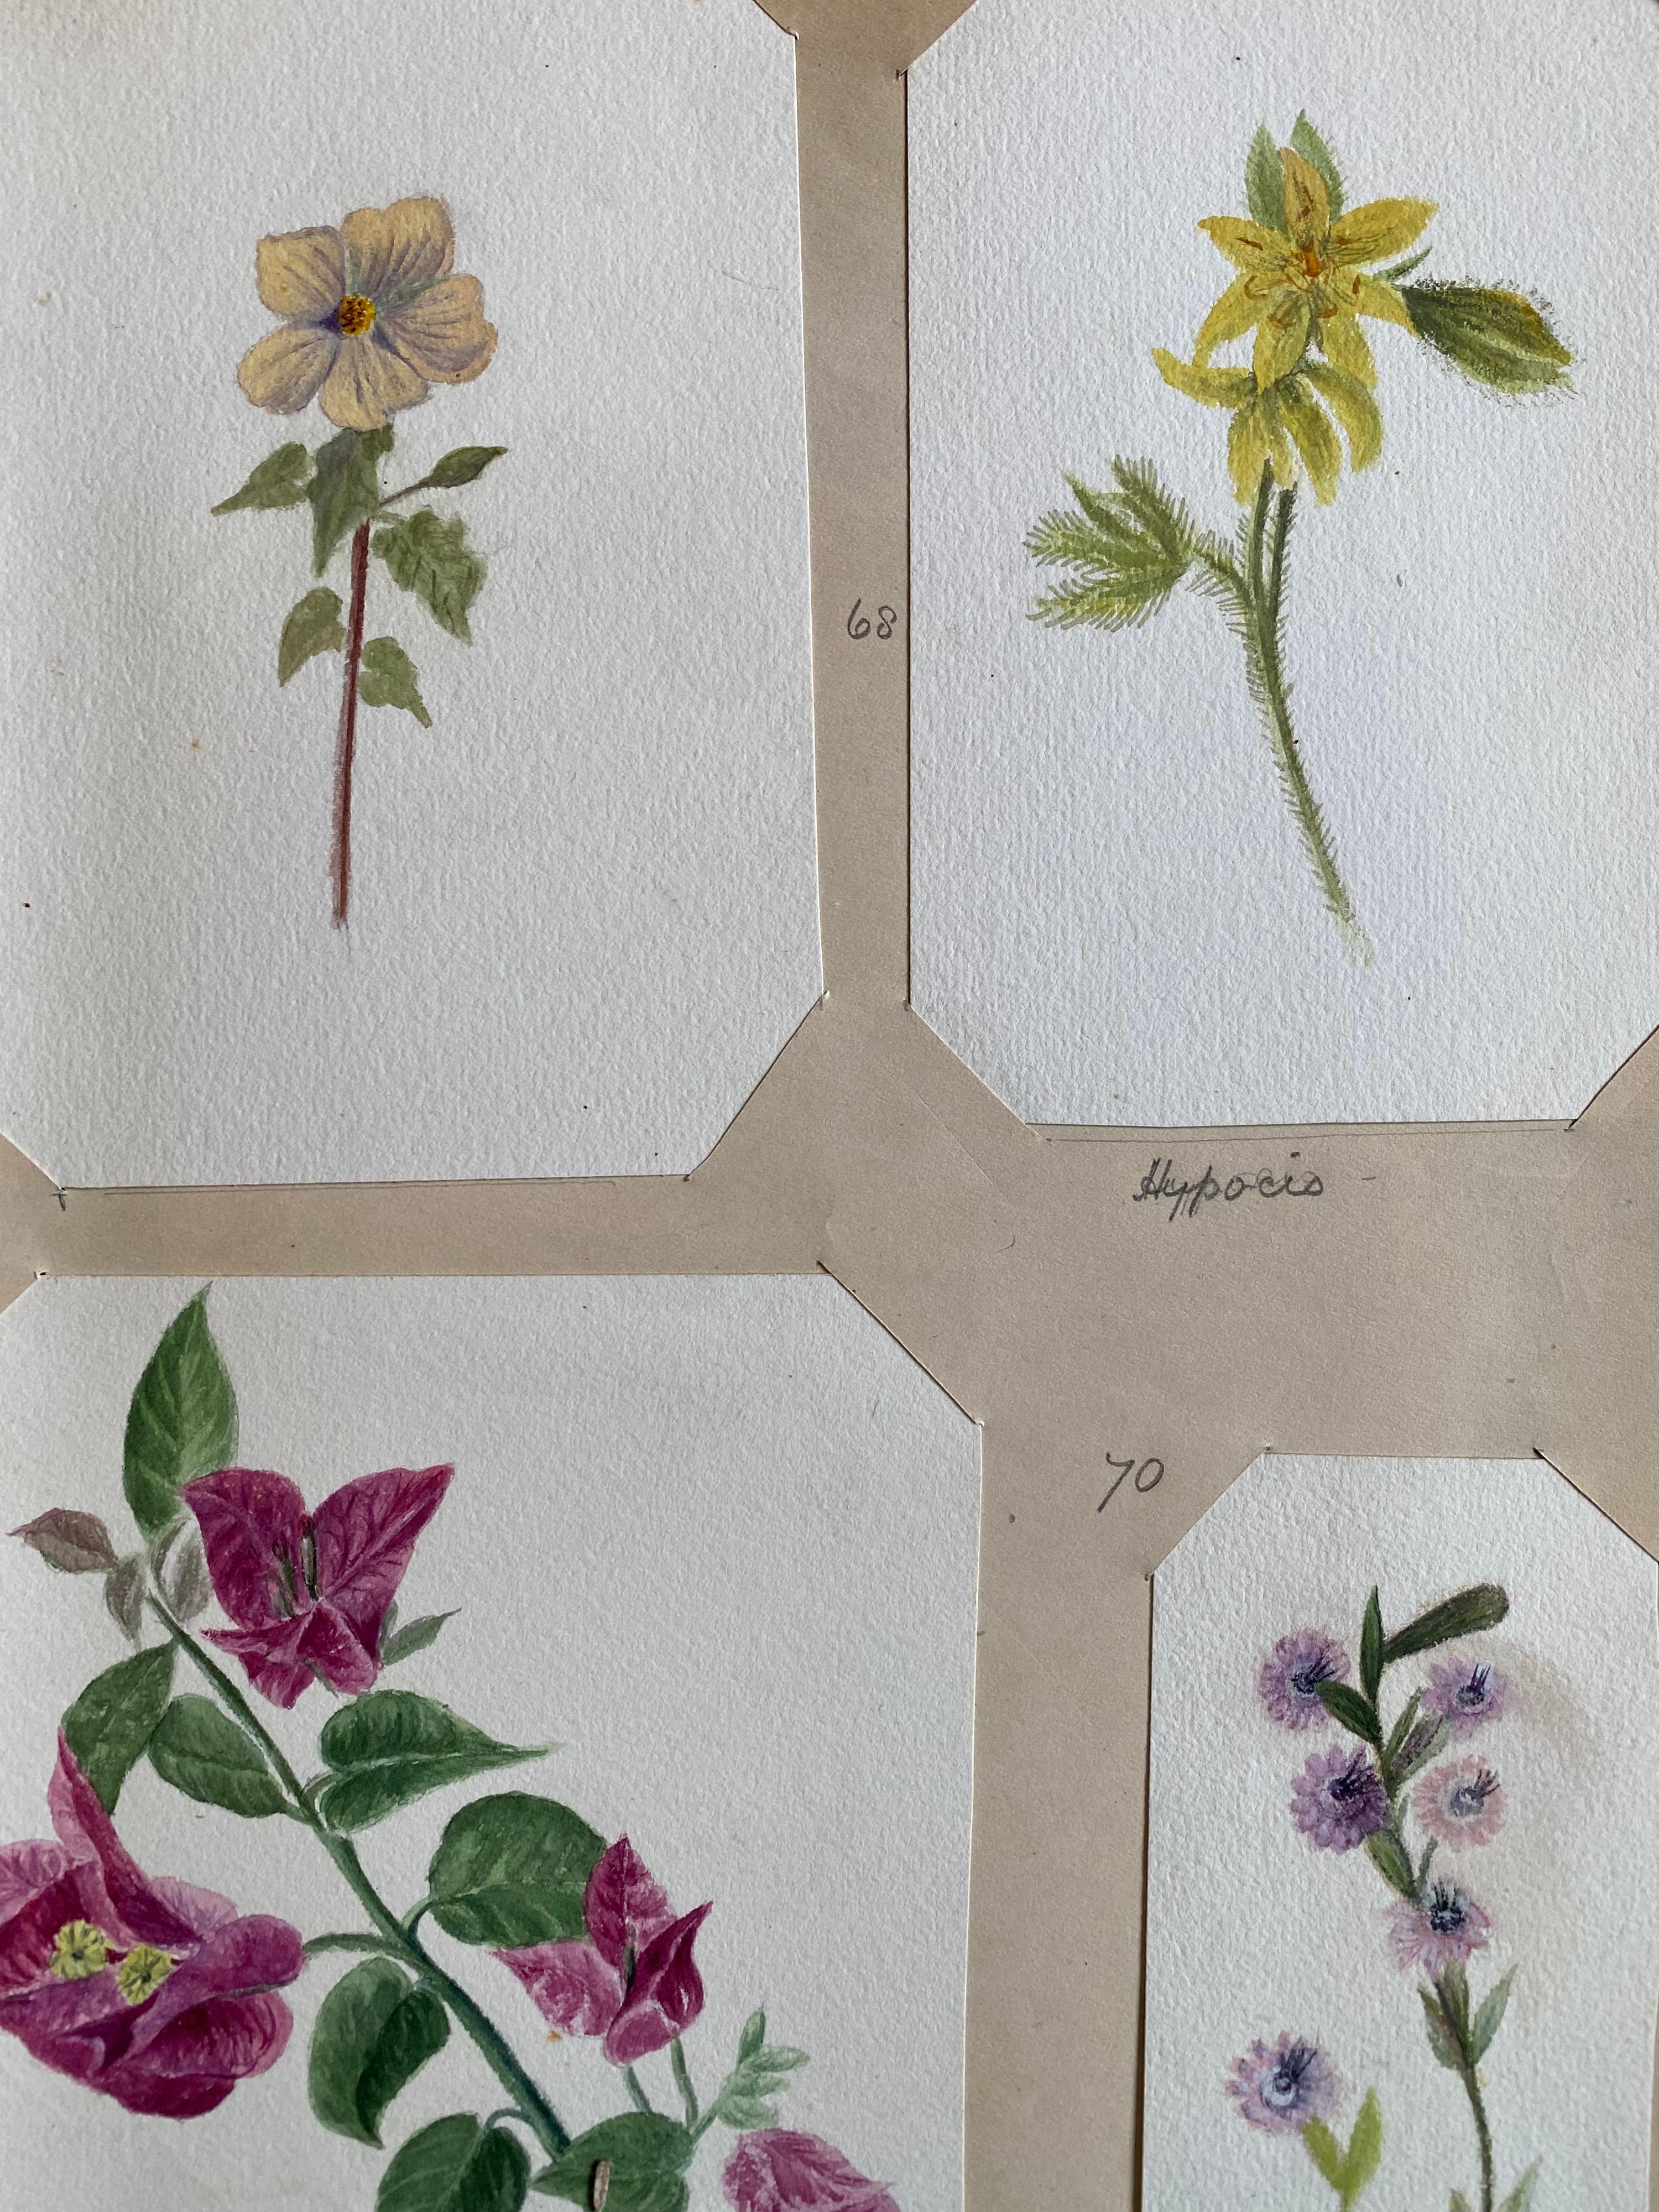 Satz von vier sehr schönen originalen englischen botanischen Aquarellen, die diese schöne Darstellung einer Blume/Pflanze zeigen. Das Werk stammt aus einer Privatsammlung in Surrey, England, und war Teil eines Albums mit Werken, die der Künstler in